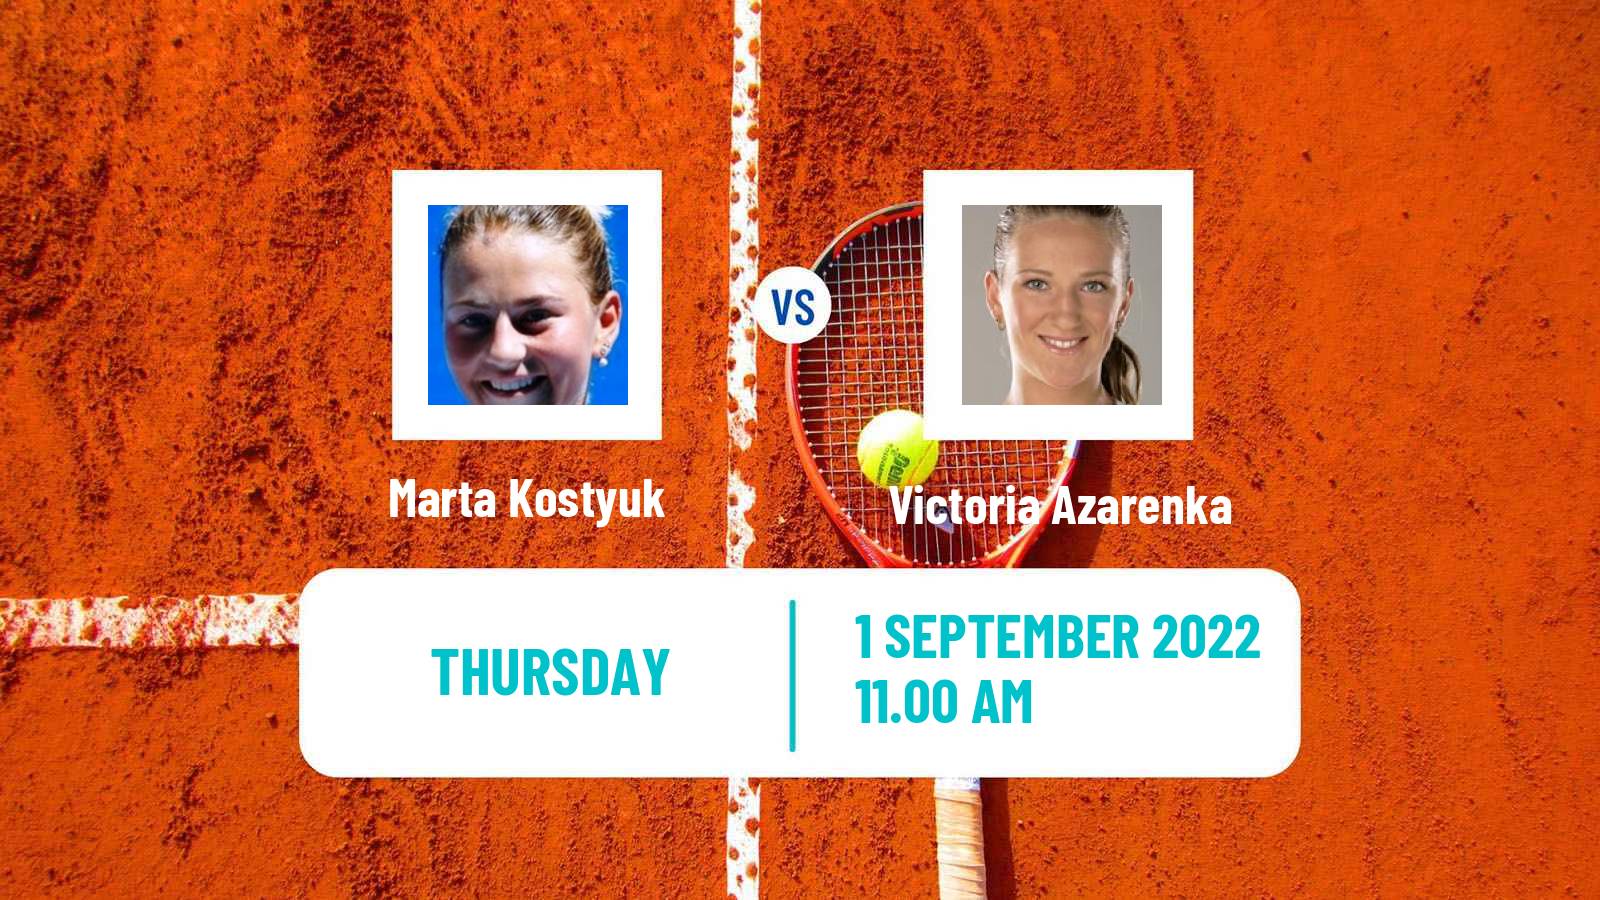 Tennis WTA US Open Marta Kostyuk - Victoria Azarenka